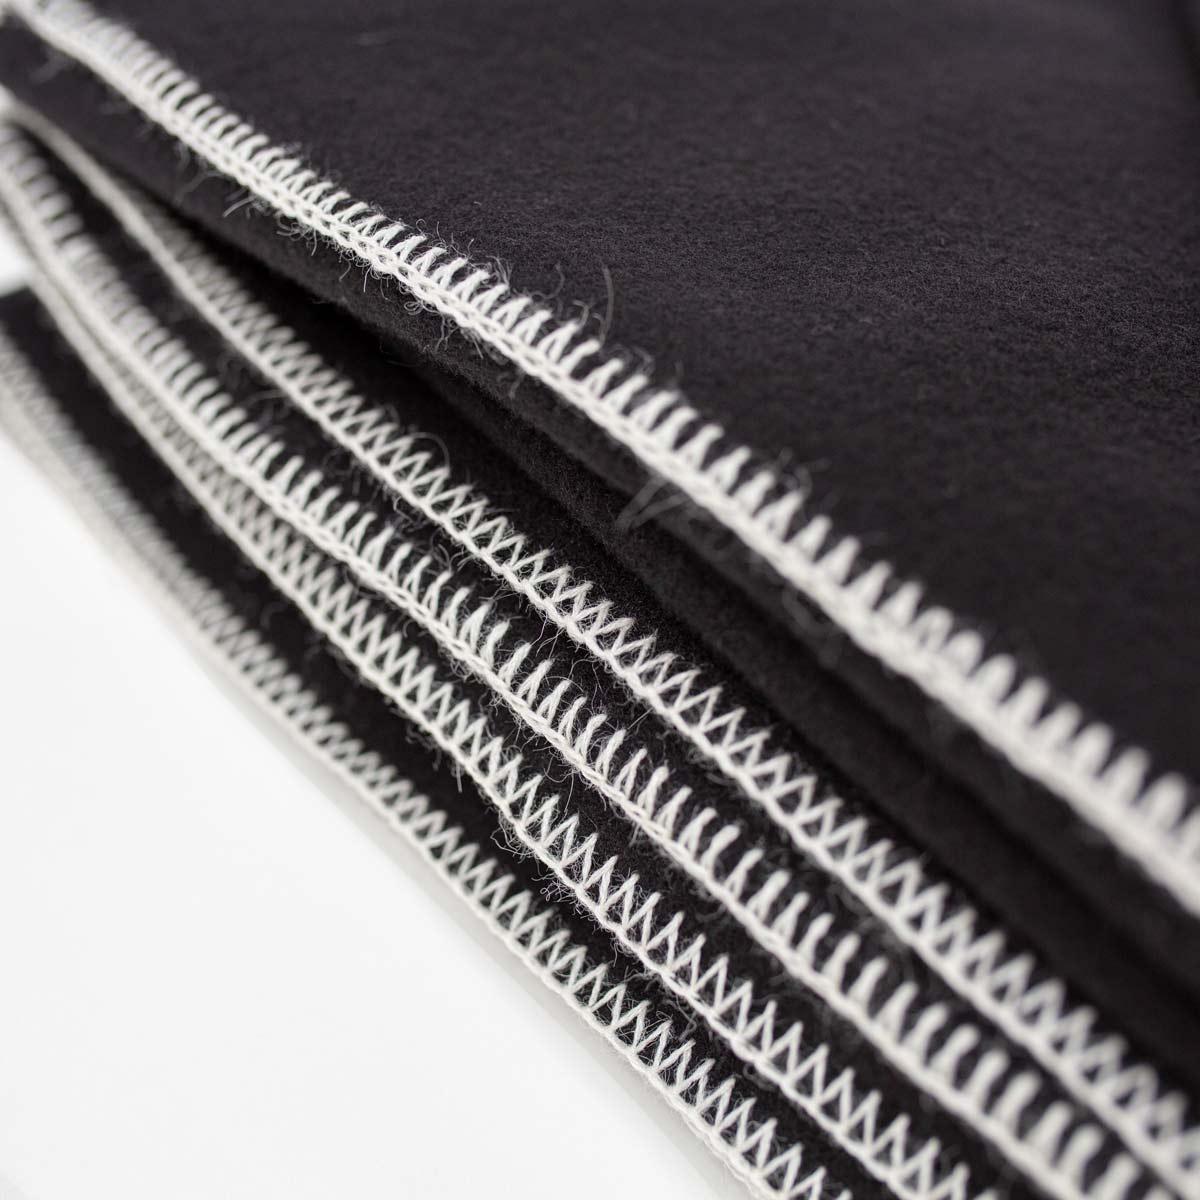 Die klassische Decke von JG ist eine maßgeschneiderte Decke, die in England aus weicher und hochwertiger Kaschmir- und Lammwollmischung gewalkt wird - eine seltene Mischung, die in dieser großzügigen Größe nur schwer zu finden ist. Sie wird mit